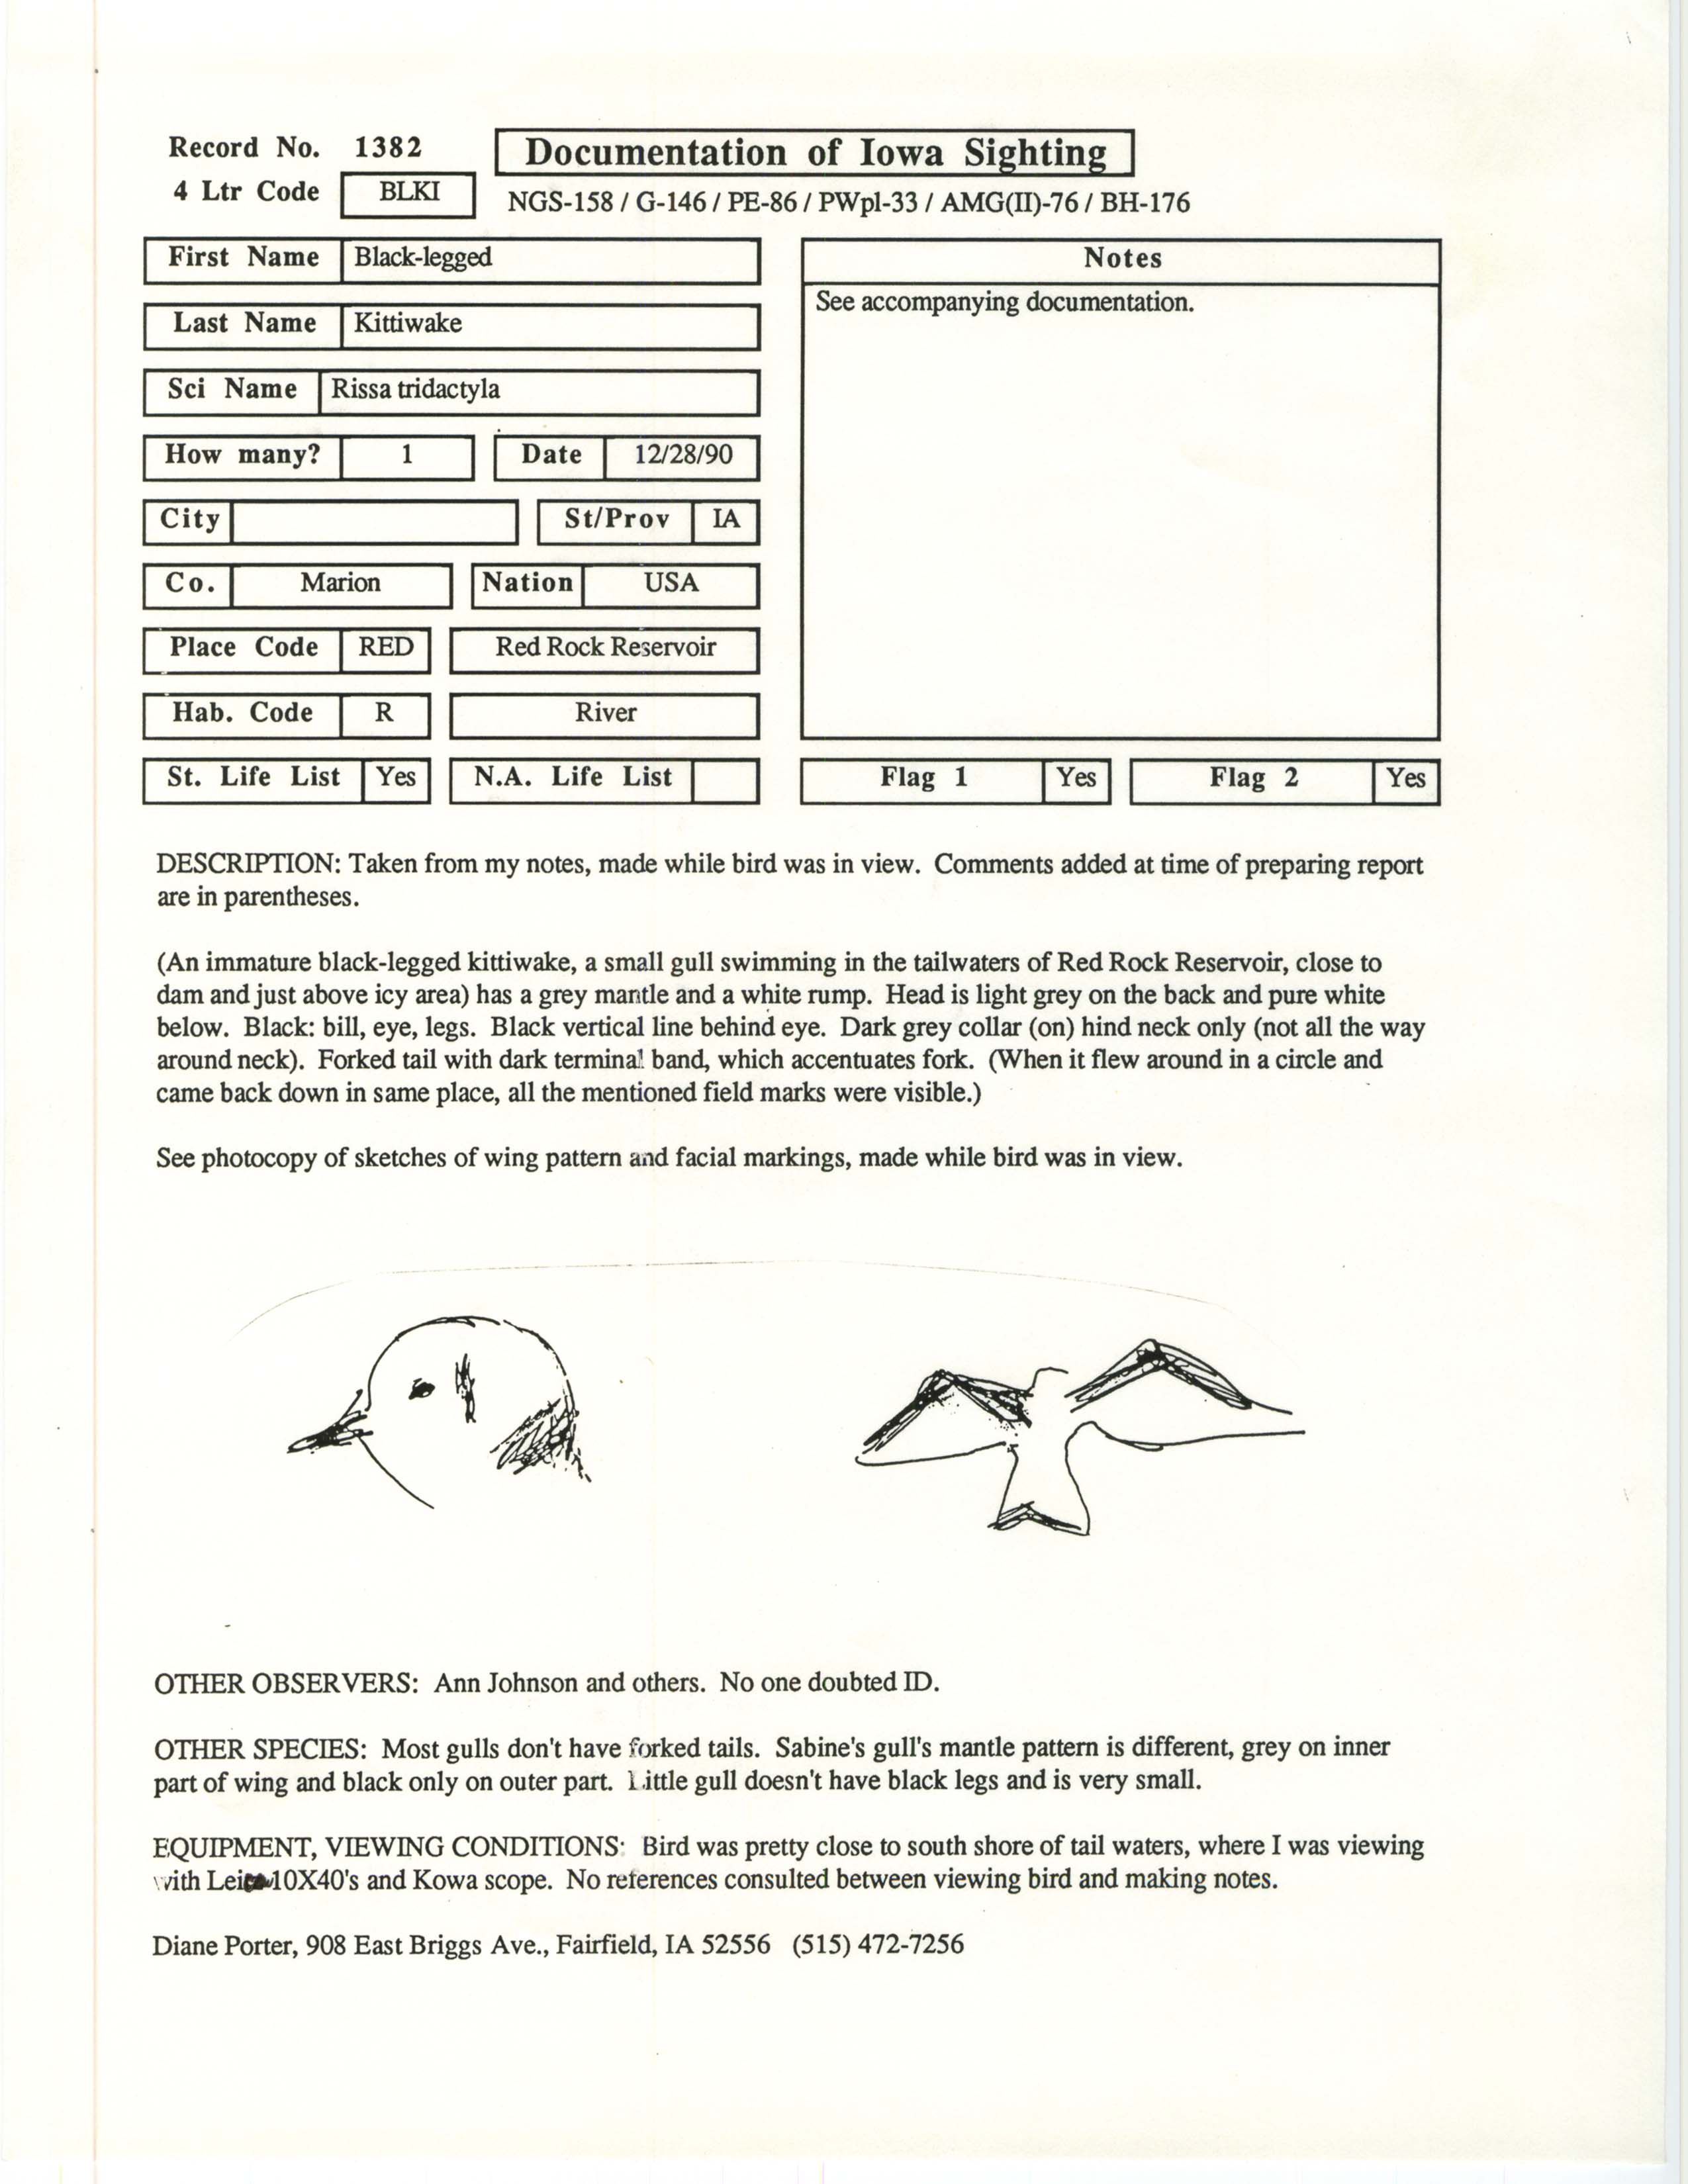 Rare bird documentation form for Black-legged Kittiwake at Red Rock Reservoir, 1990